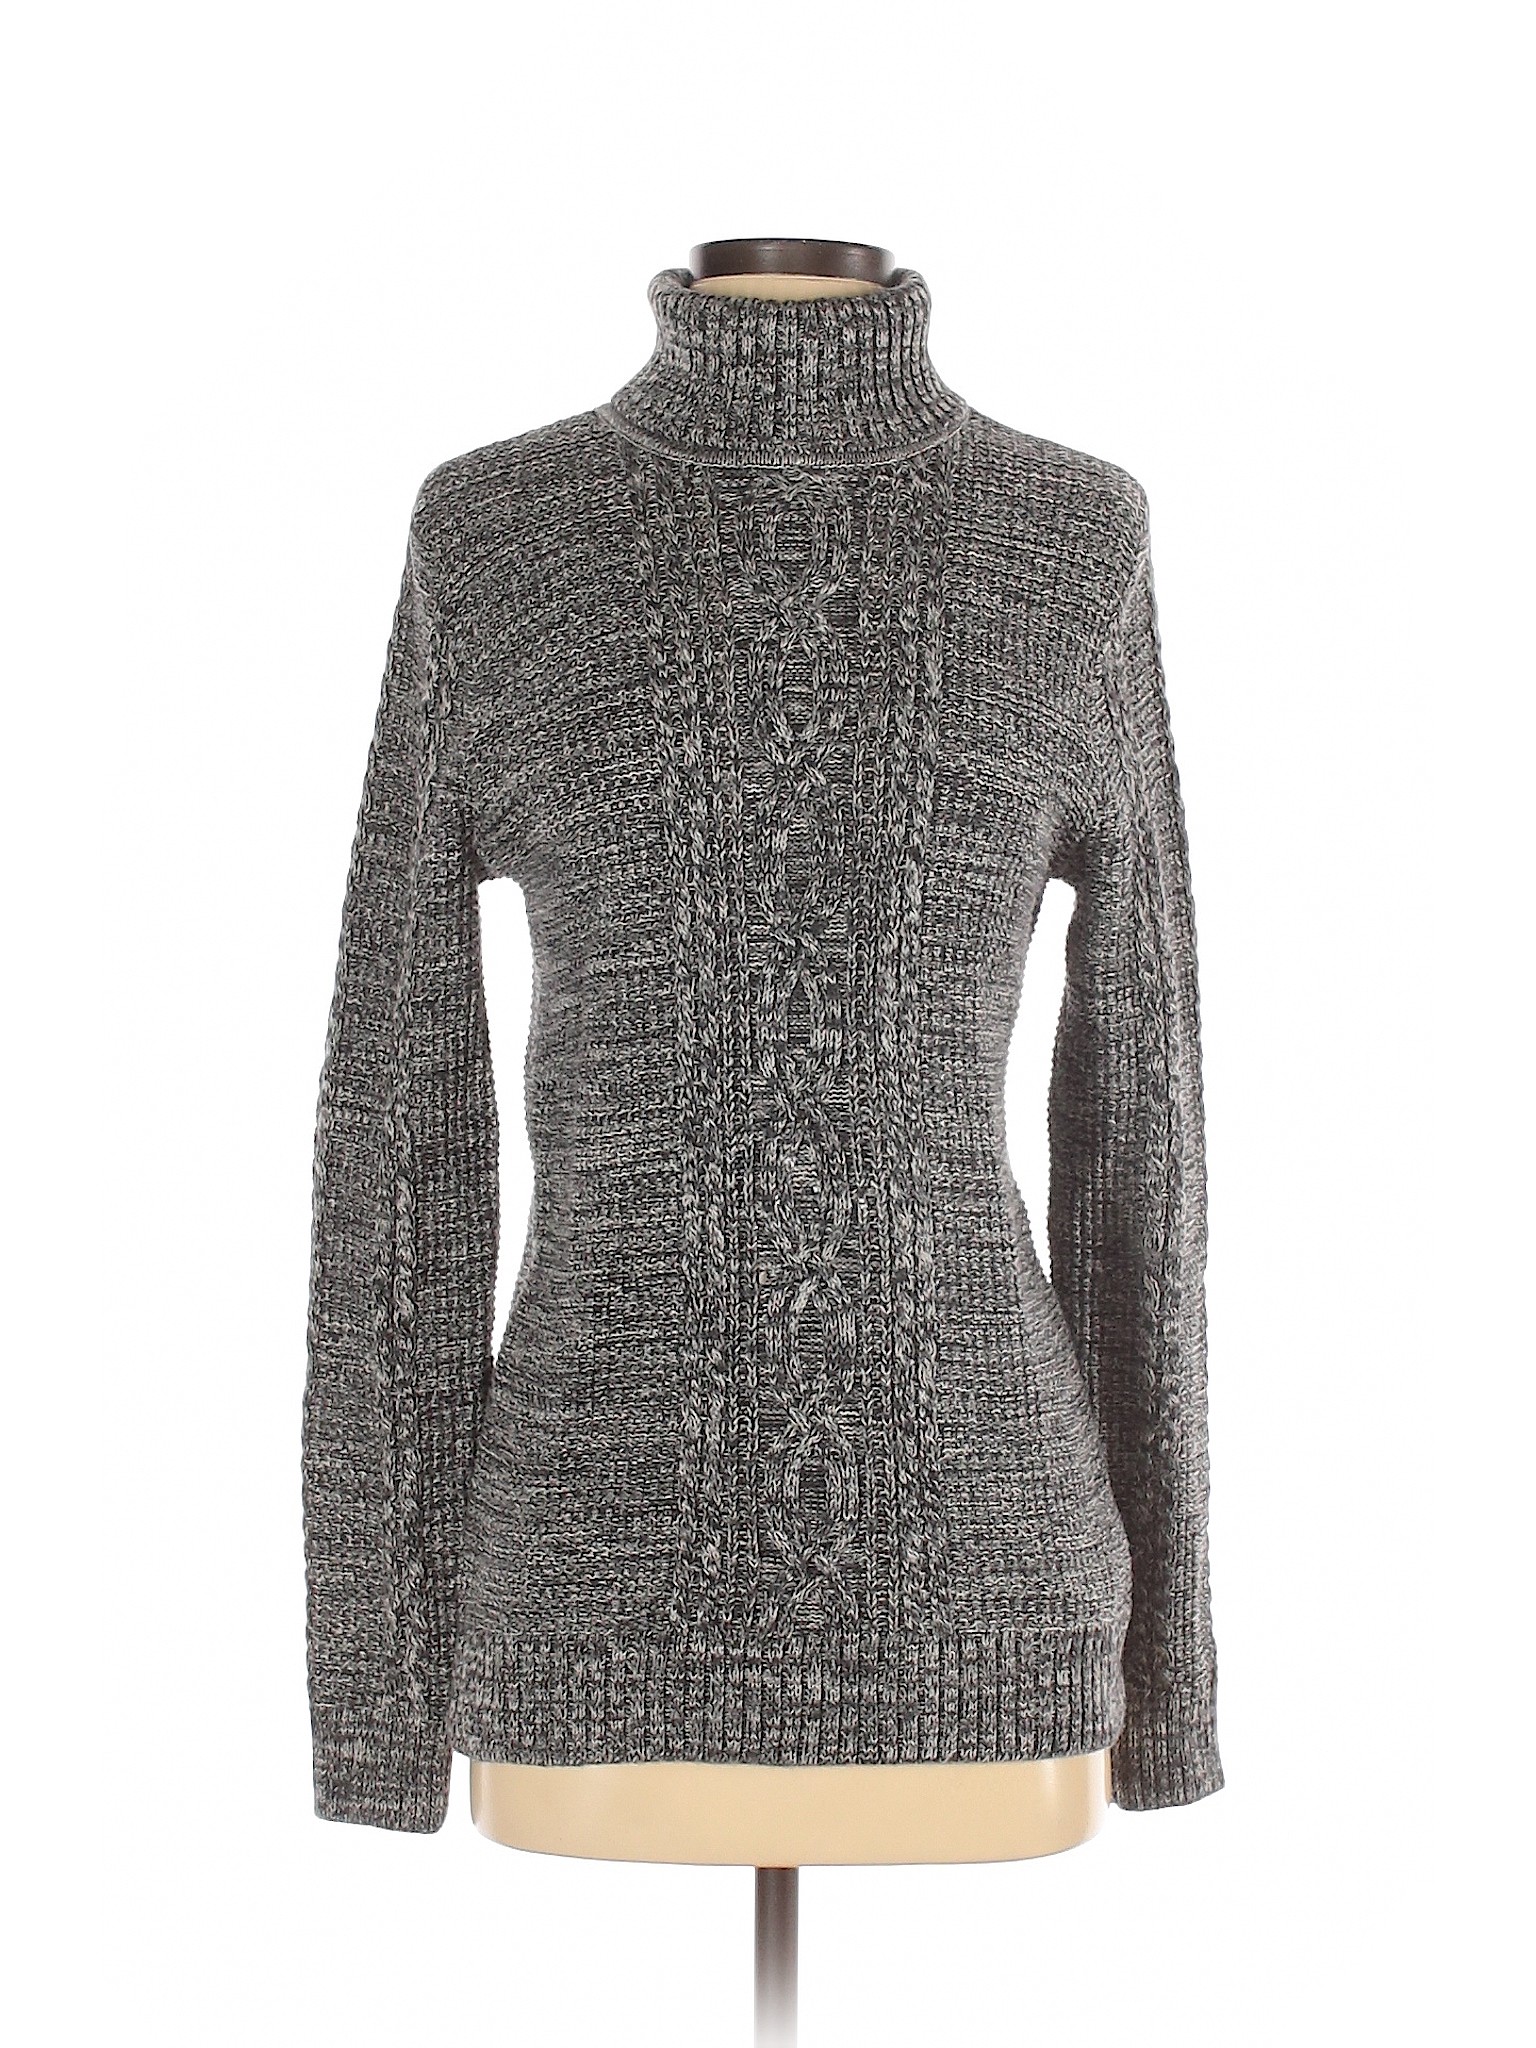 Jeanne Pierre Women Gray Turtleneck Sweater S | eBay